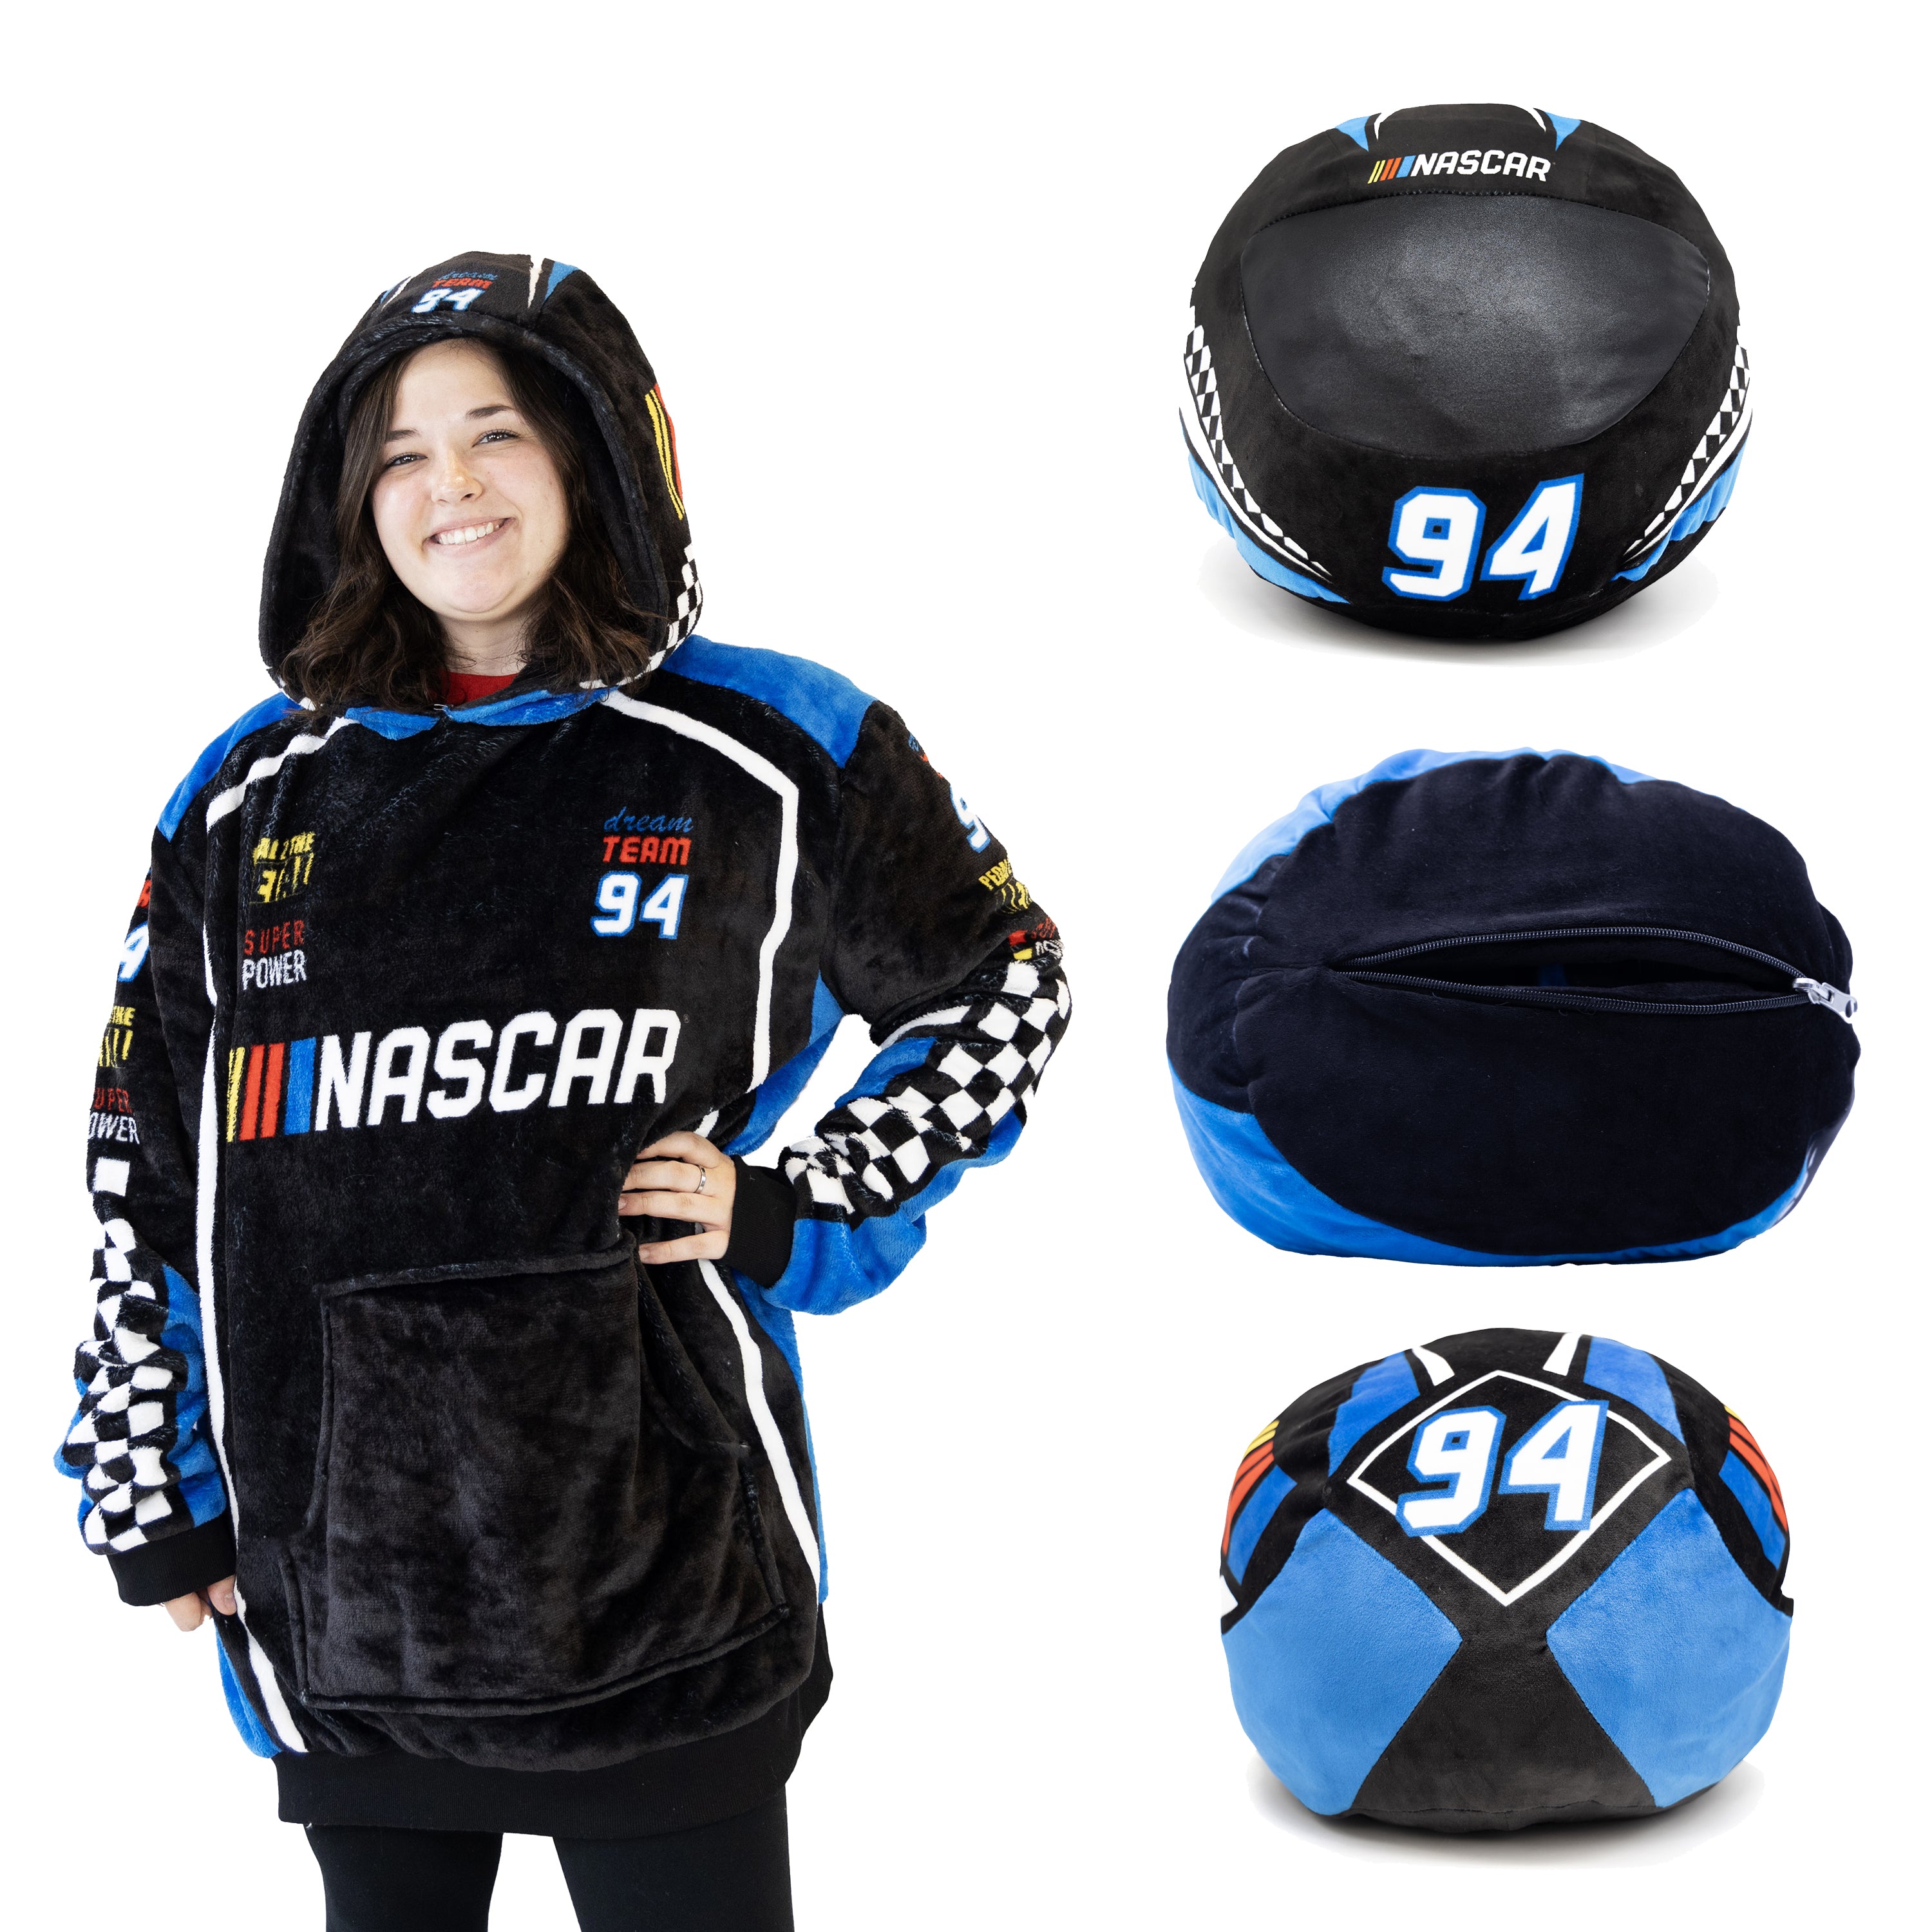 NASCAR | Black Racing Suit Snugible 2-in-1 Blanket Hoodie & Pillow